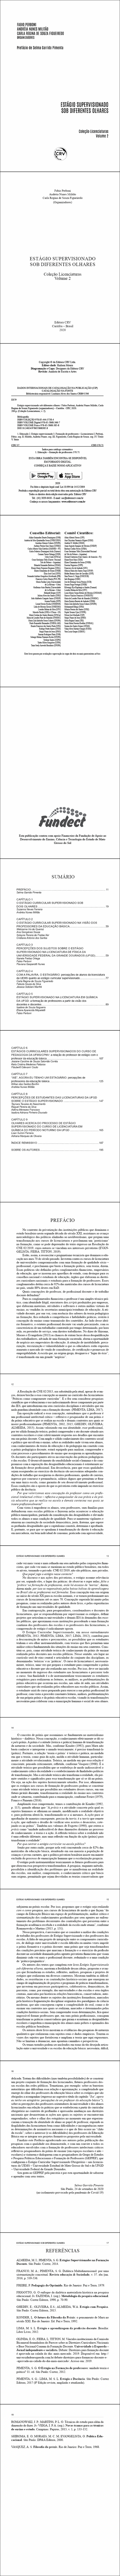 ESTÁGIO SUPERVISIONADO SOB DIFERENTES OLHARES <br>Coleção Licenciaturas - Volume 2